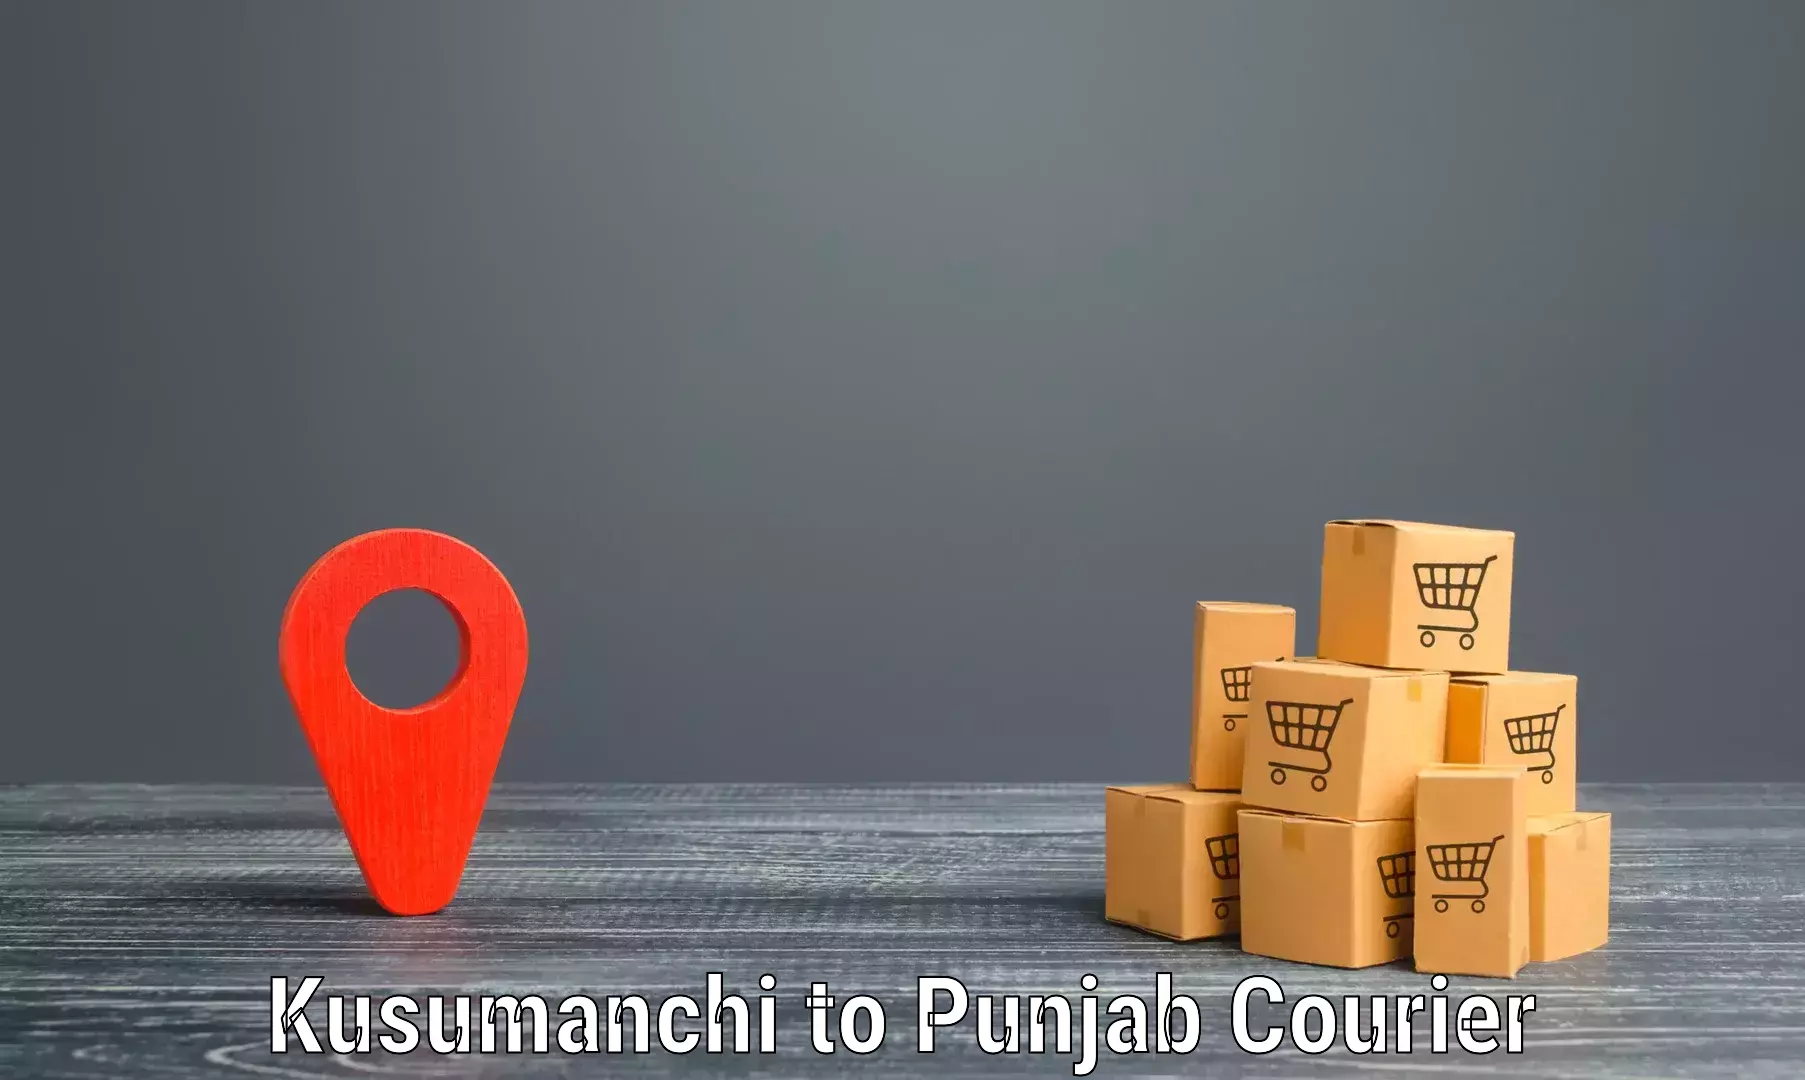 Nationwide parcel services Kusumanchi to Central University of Punjab Bathinda